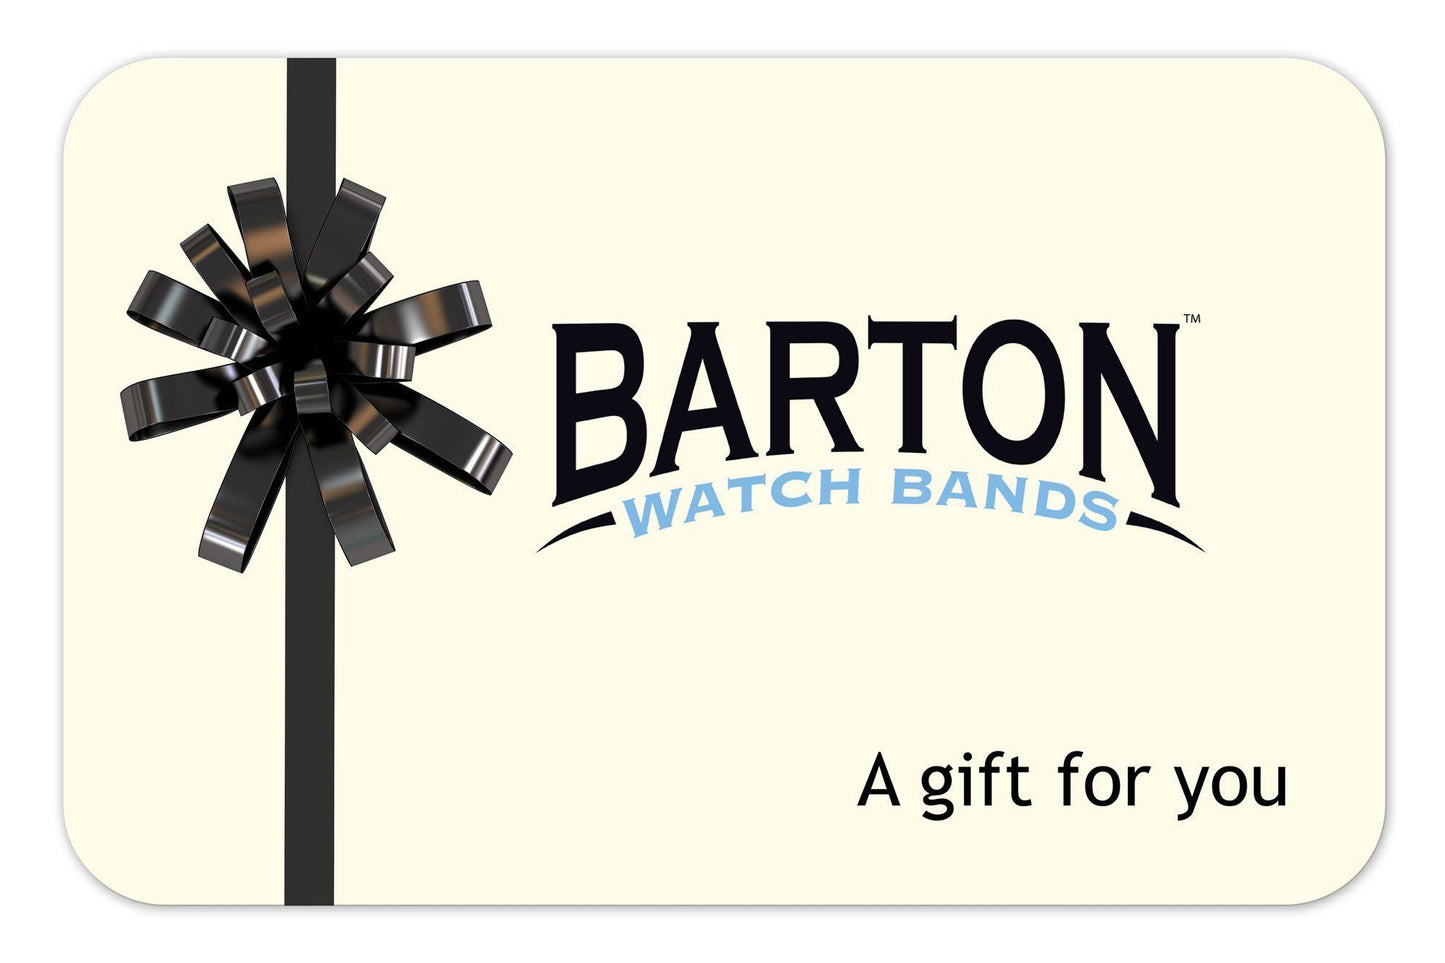 BARTON Gift Card - Barton Watch Bands